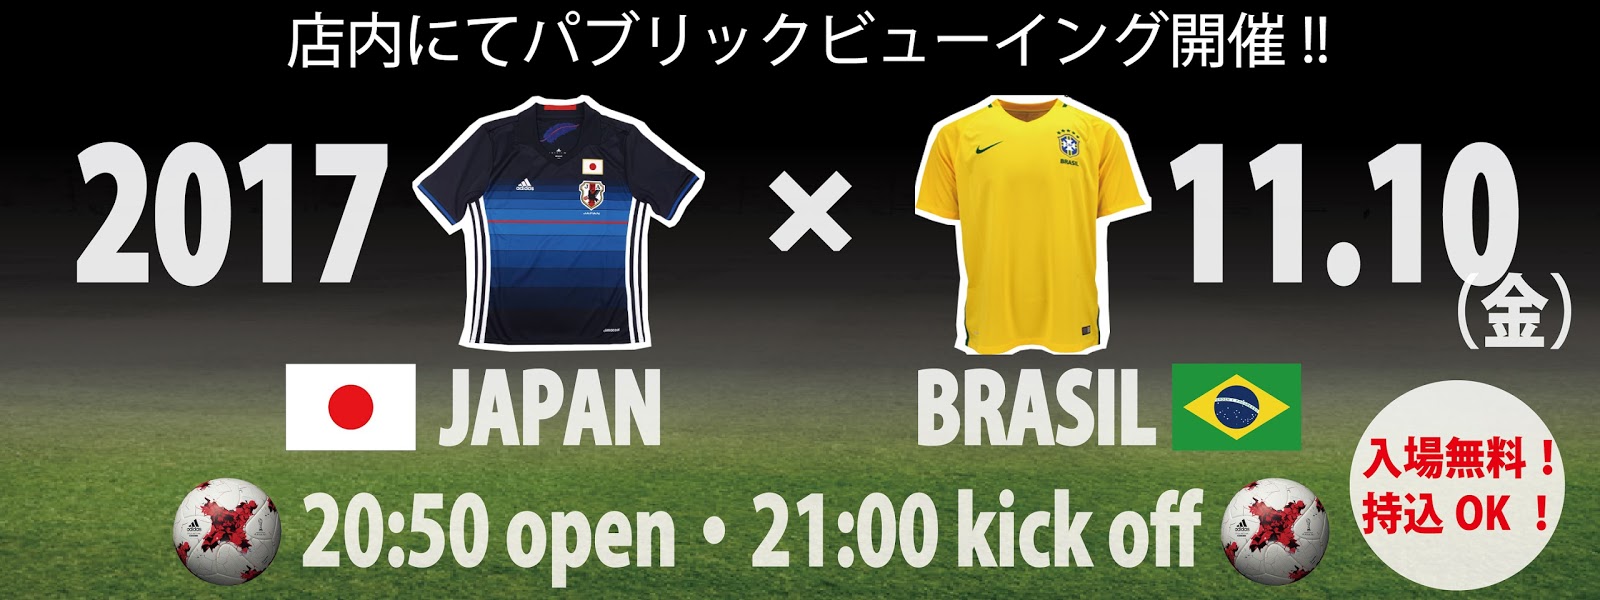 サッカー日本代表 親善試合 日本 ブラジル パブリックビューイング開催